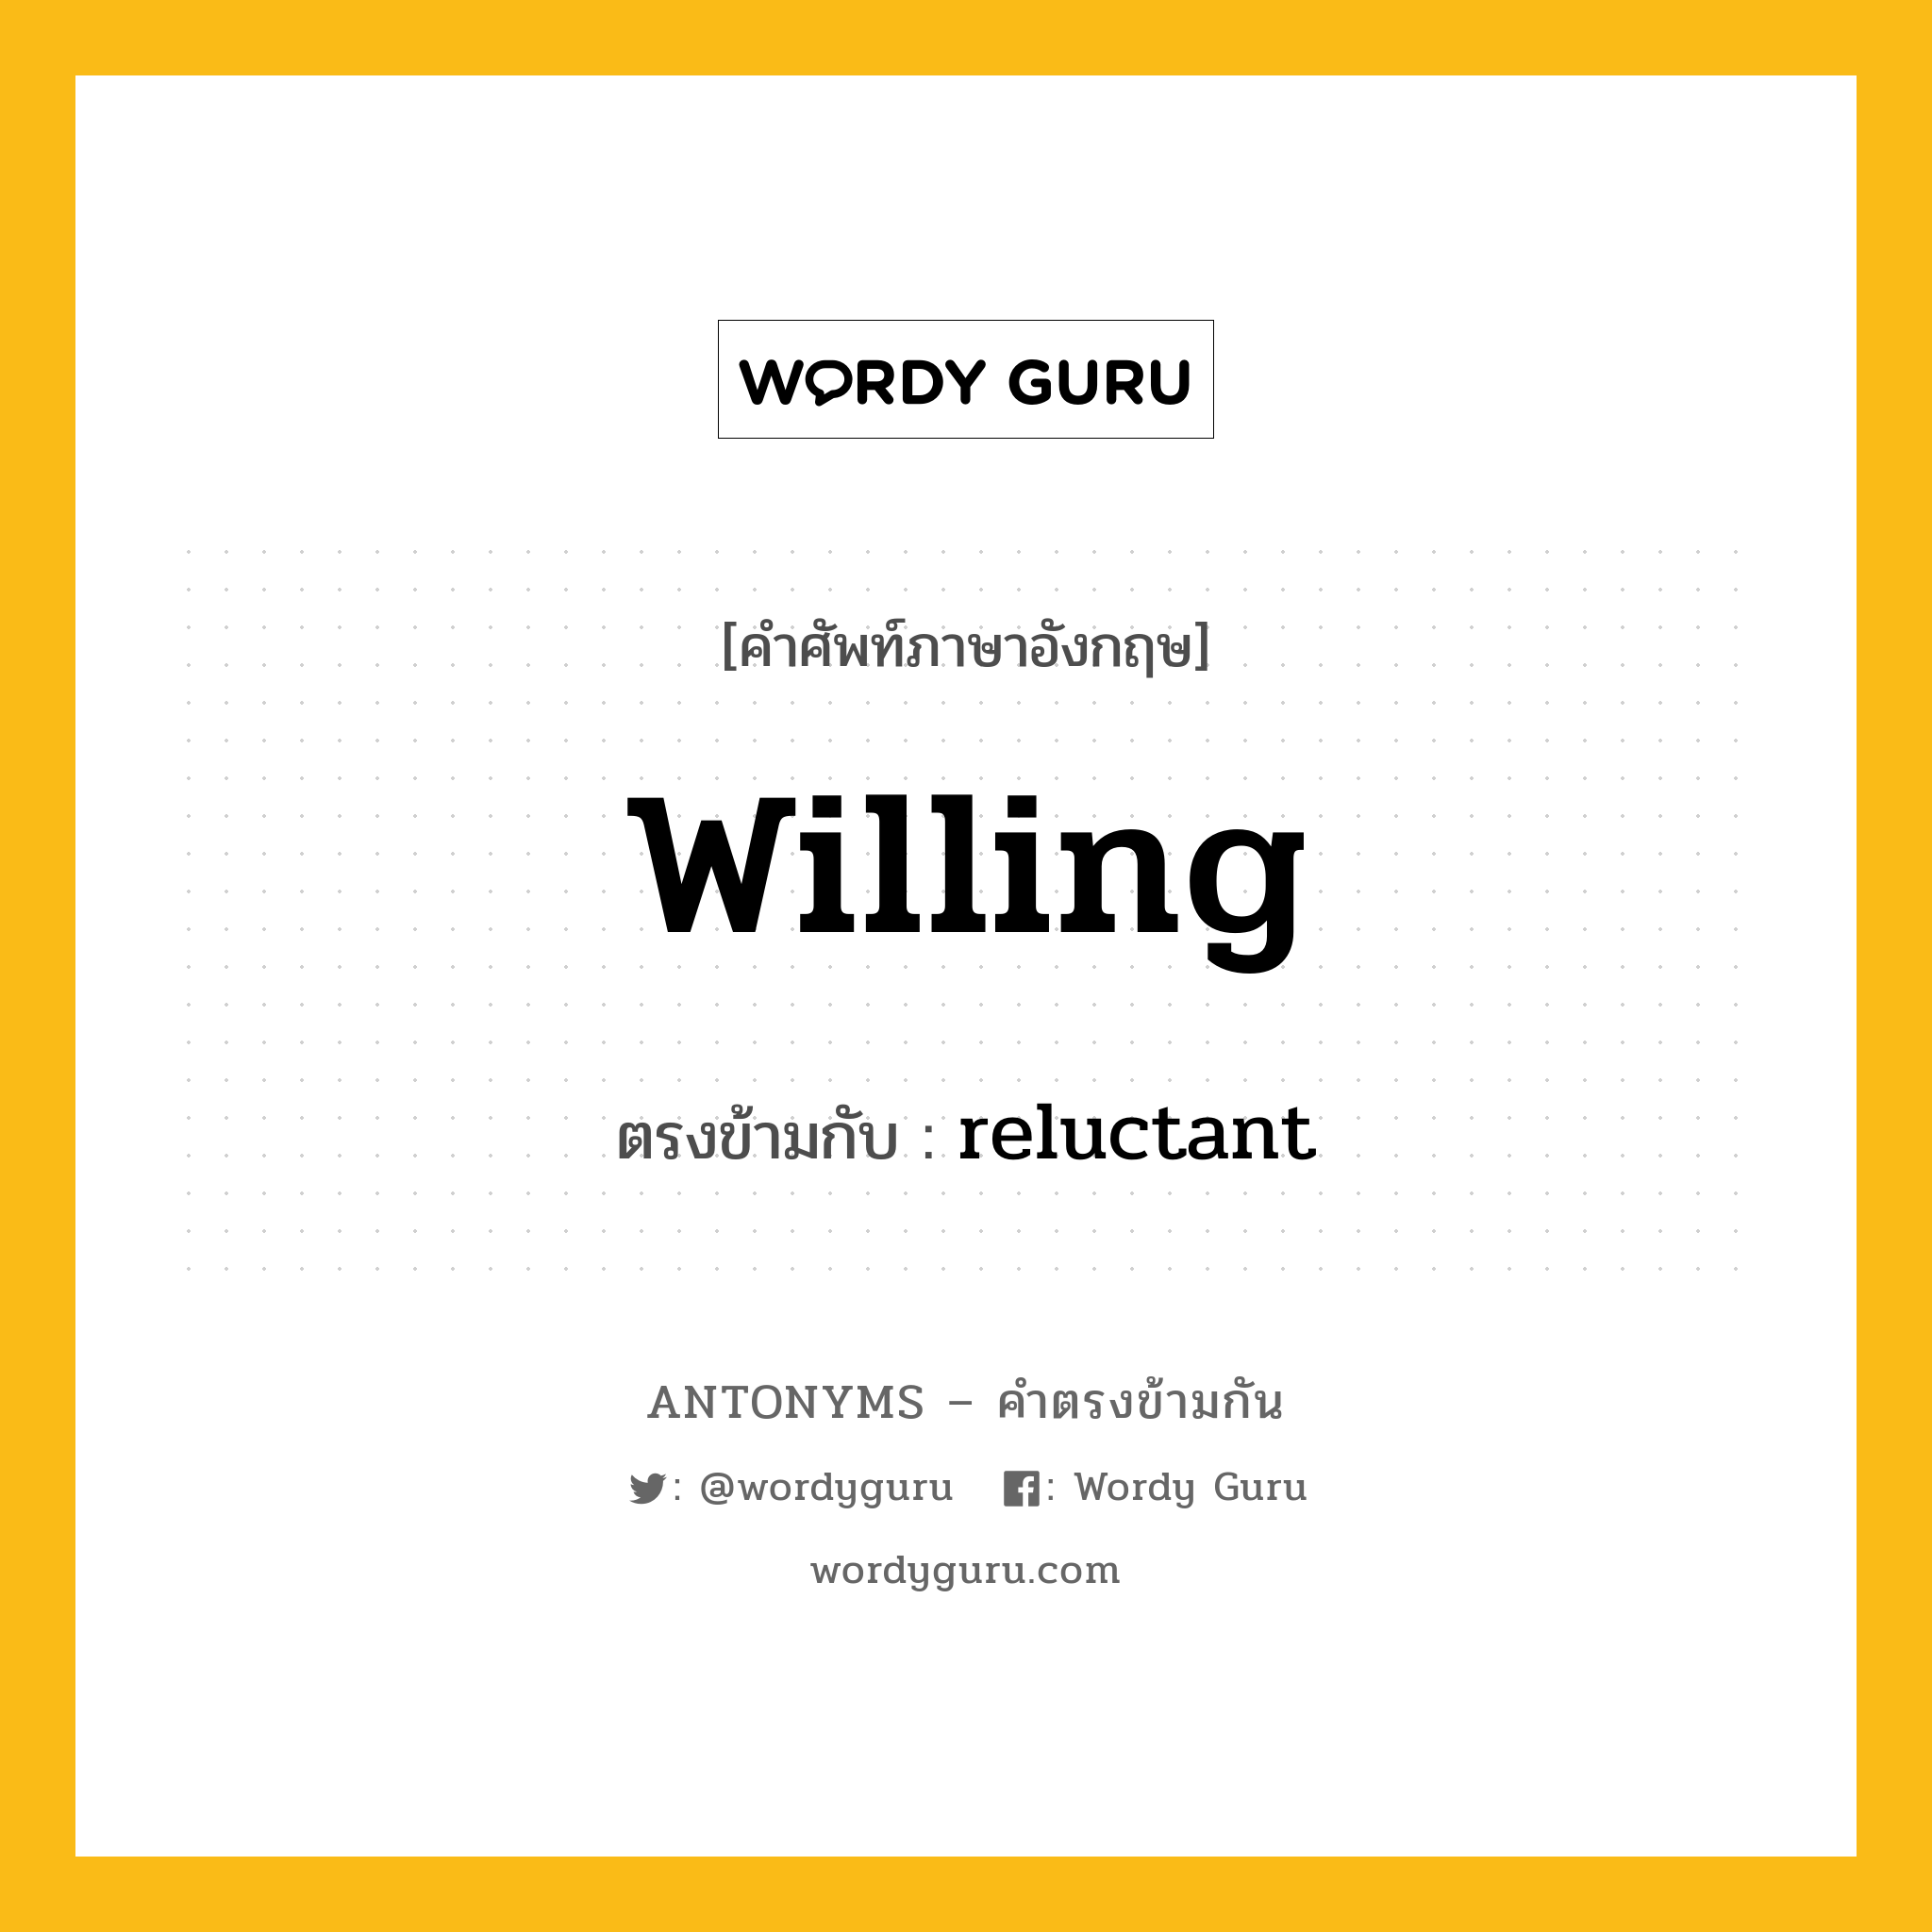 willing เป็นคำตรงข้ามกับคำไหนบ้าง?, คำศัพท์ภาษาอังกฤษ willing ตรงข้ามกับ reluctant หมวด reluctant